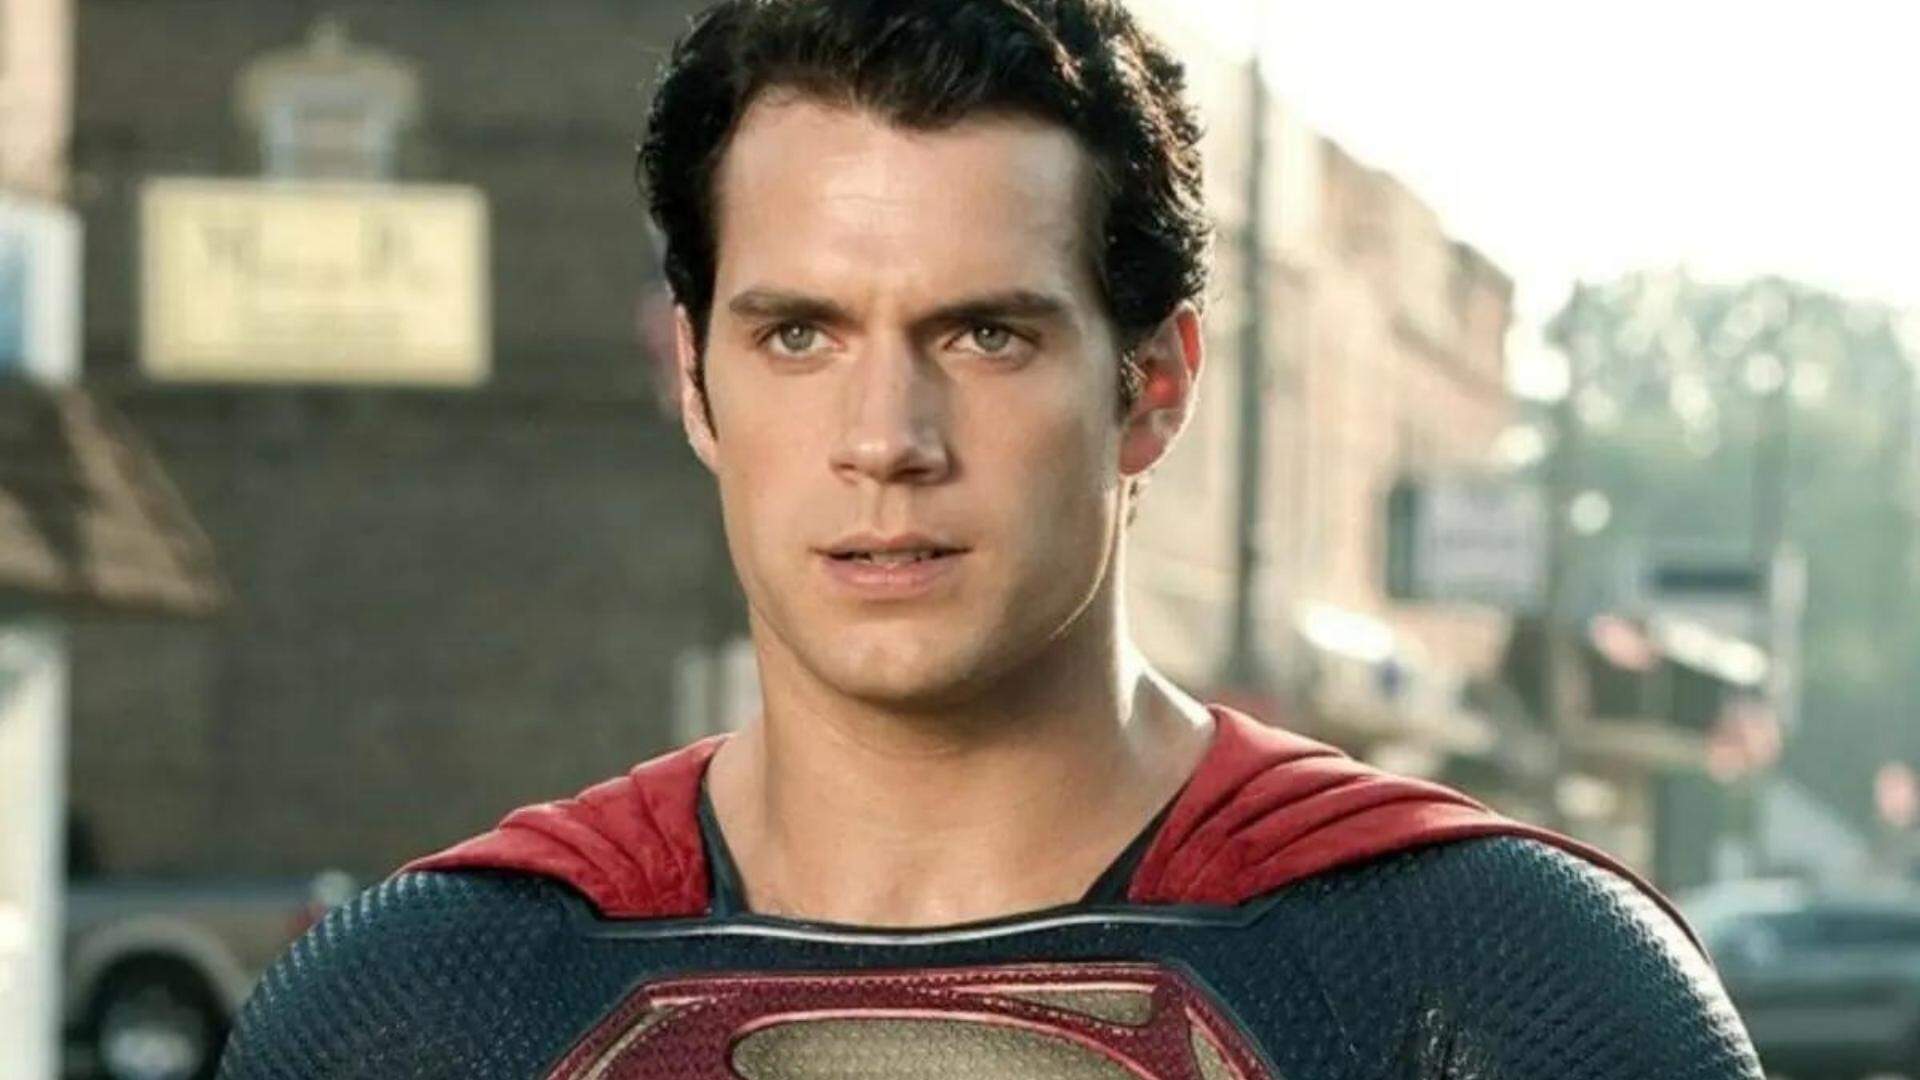 Polêmica! Henry Cavill, ator de Superman, revela o inesperado sobre cenas de sexo em Hollywood - Metropolitana FM